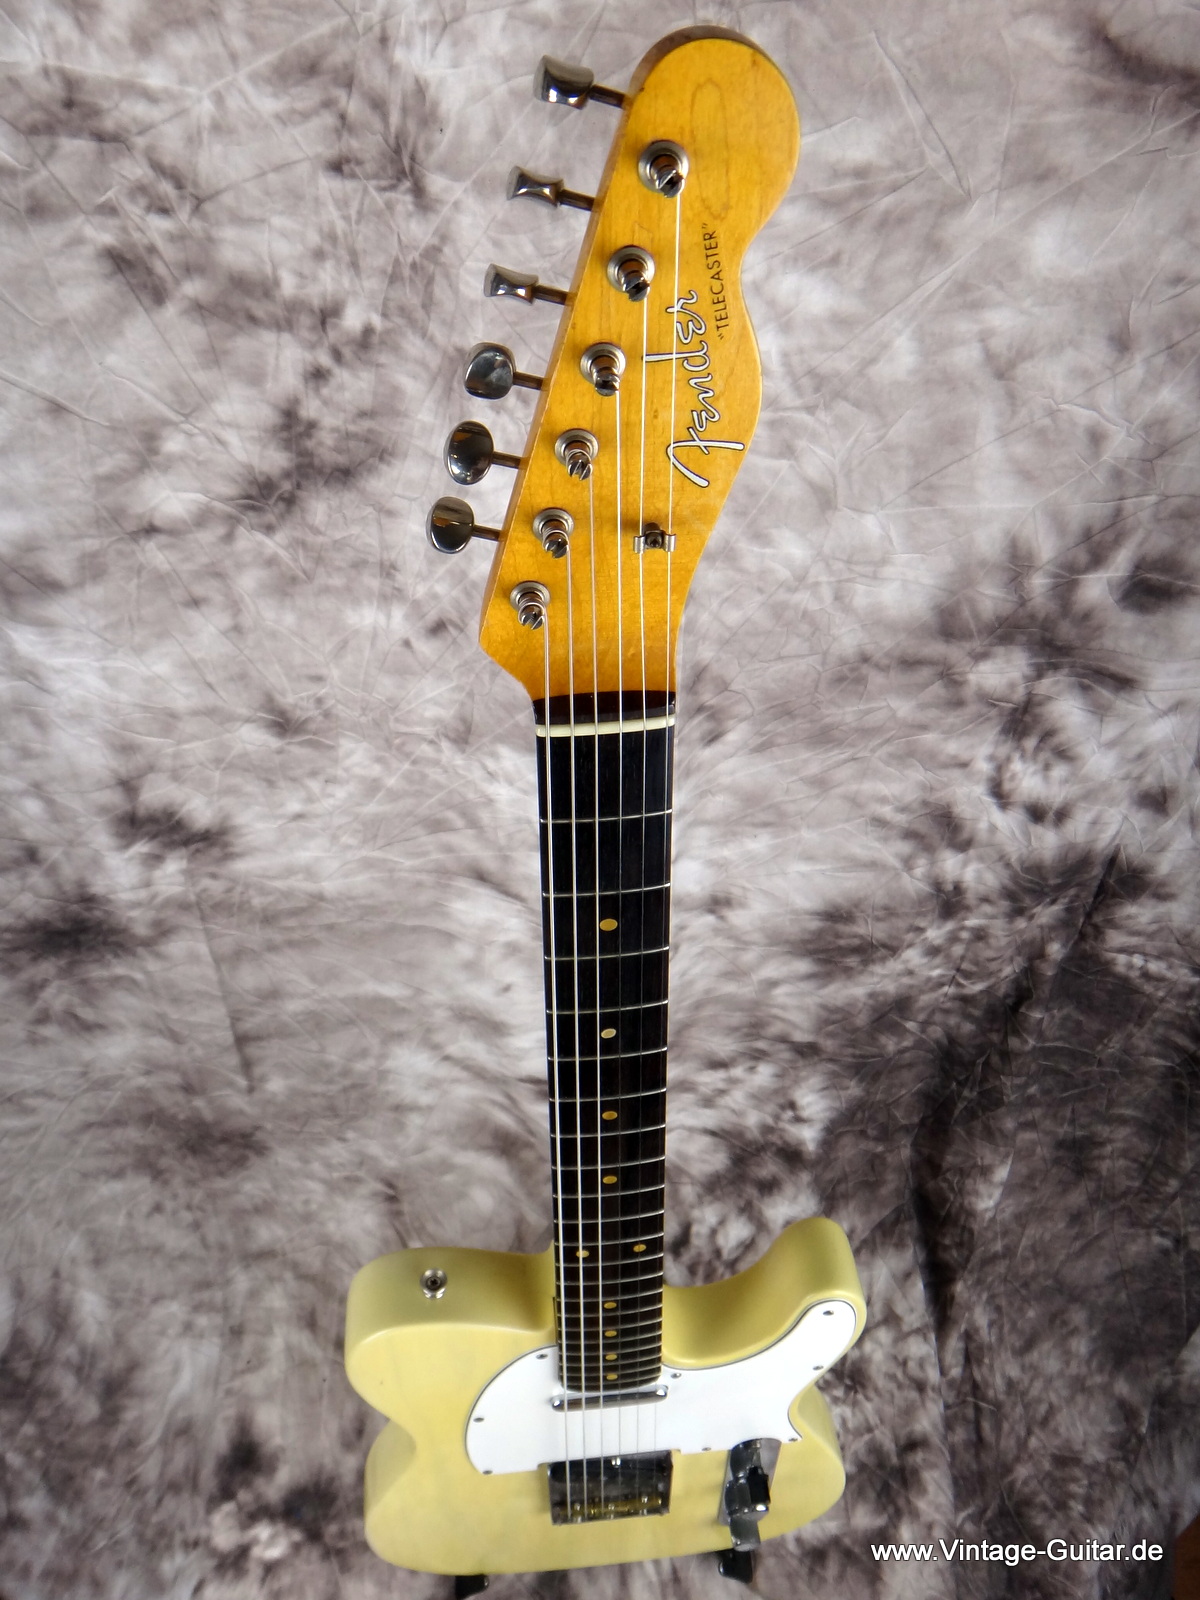 Fender_Telecaster_1966-Jazzmaster-neck-1959-007.JPG